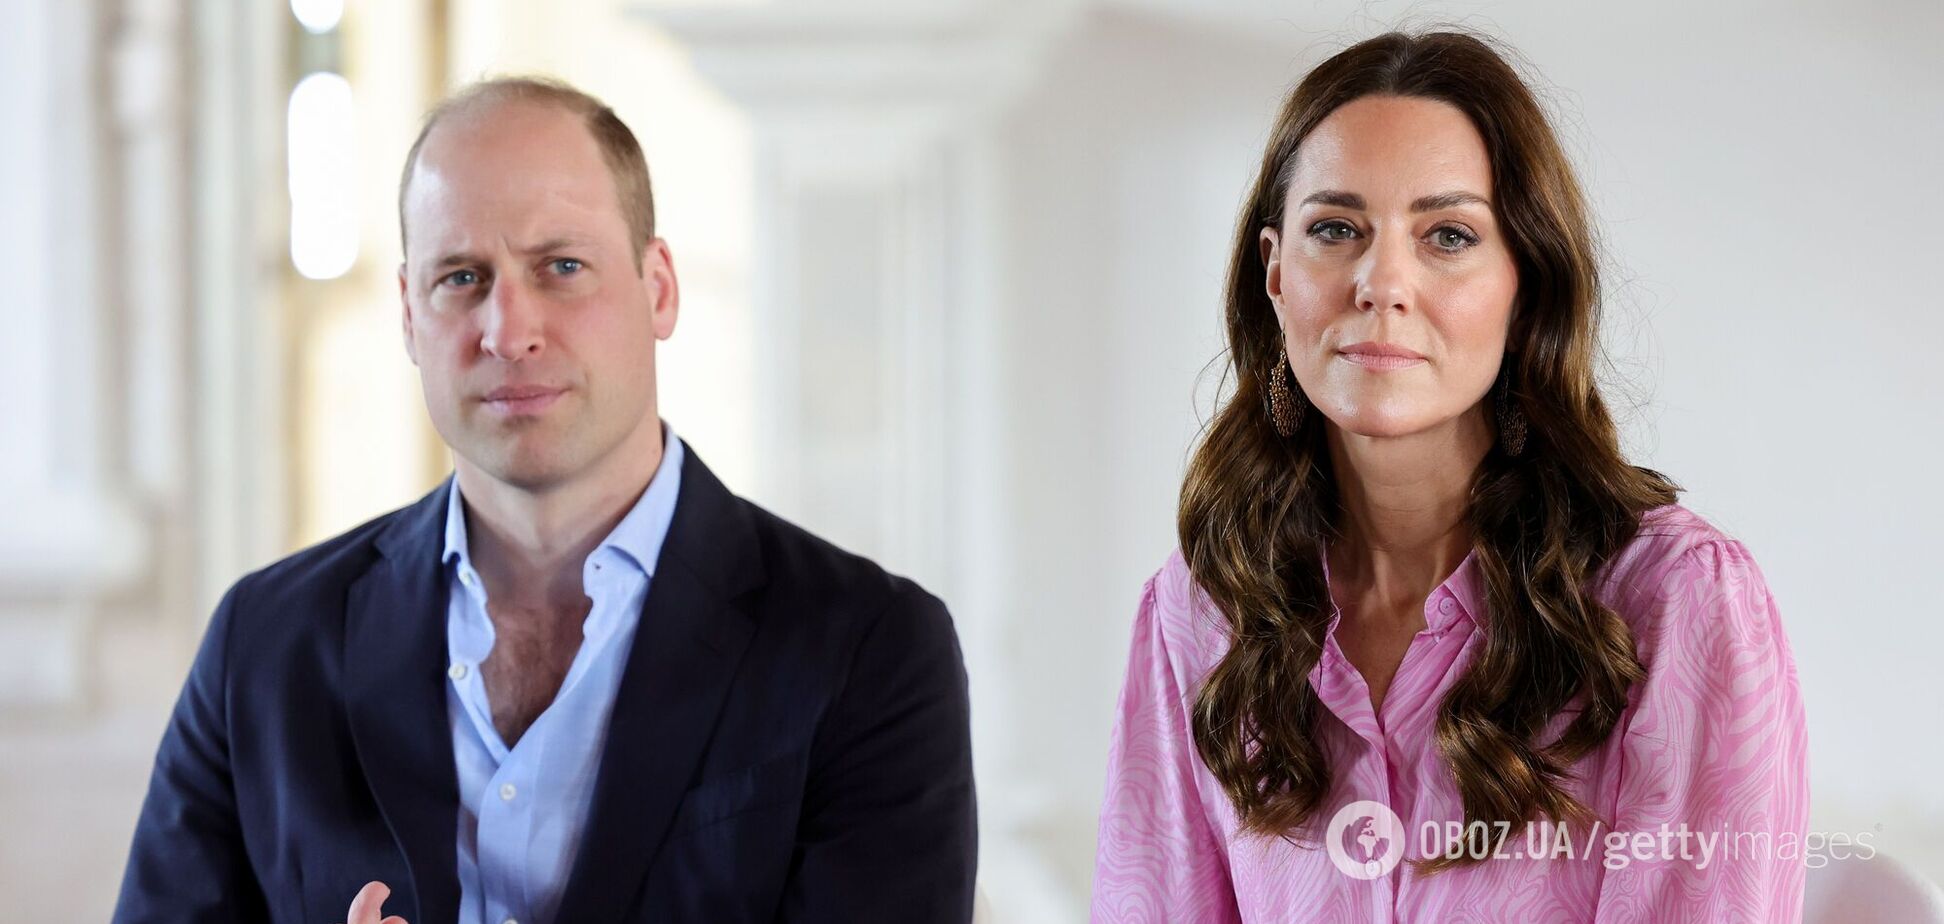 Принц Вільям в останню хвилину відмовився від участі у важливому заході через 'особисте': в ЗМІ поповзли чутки про стан здоров'я Кейт Міддлтон